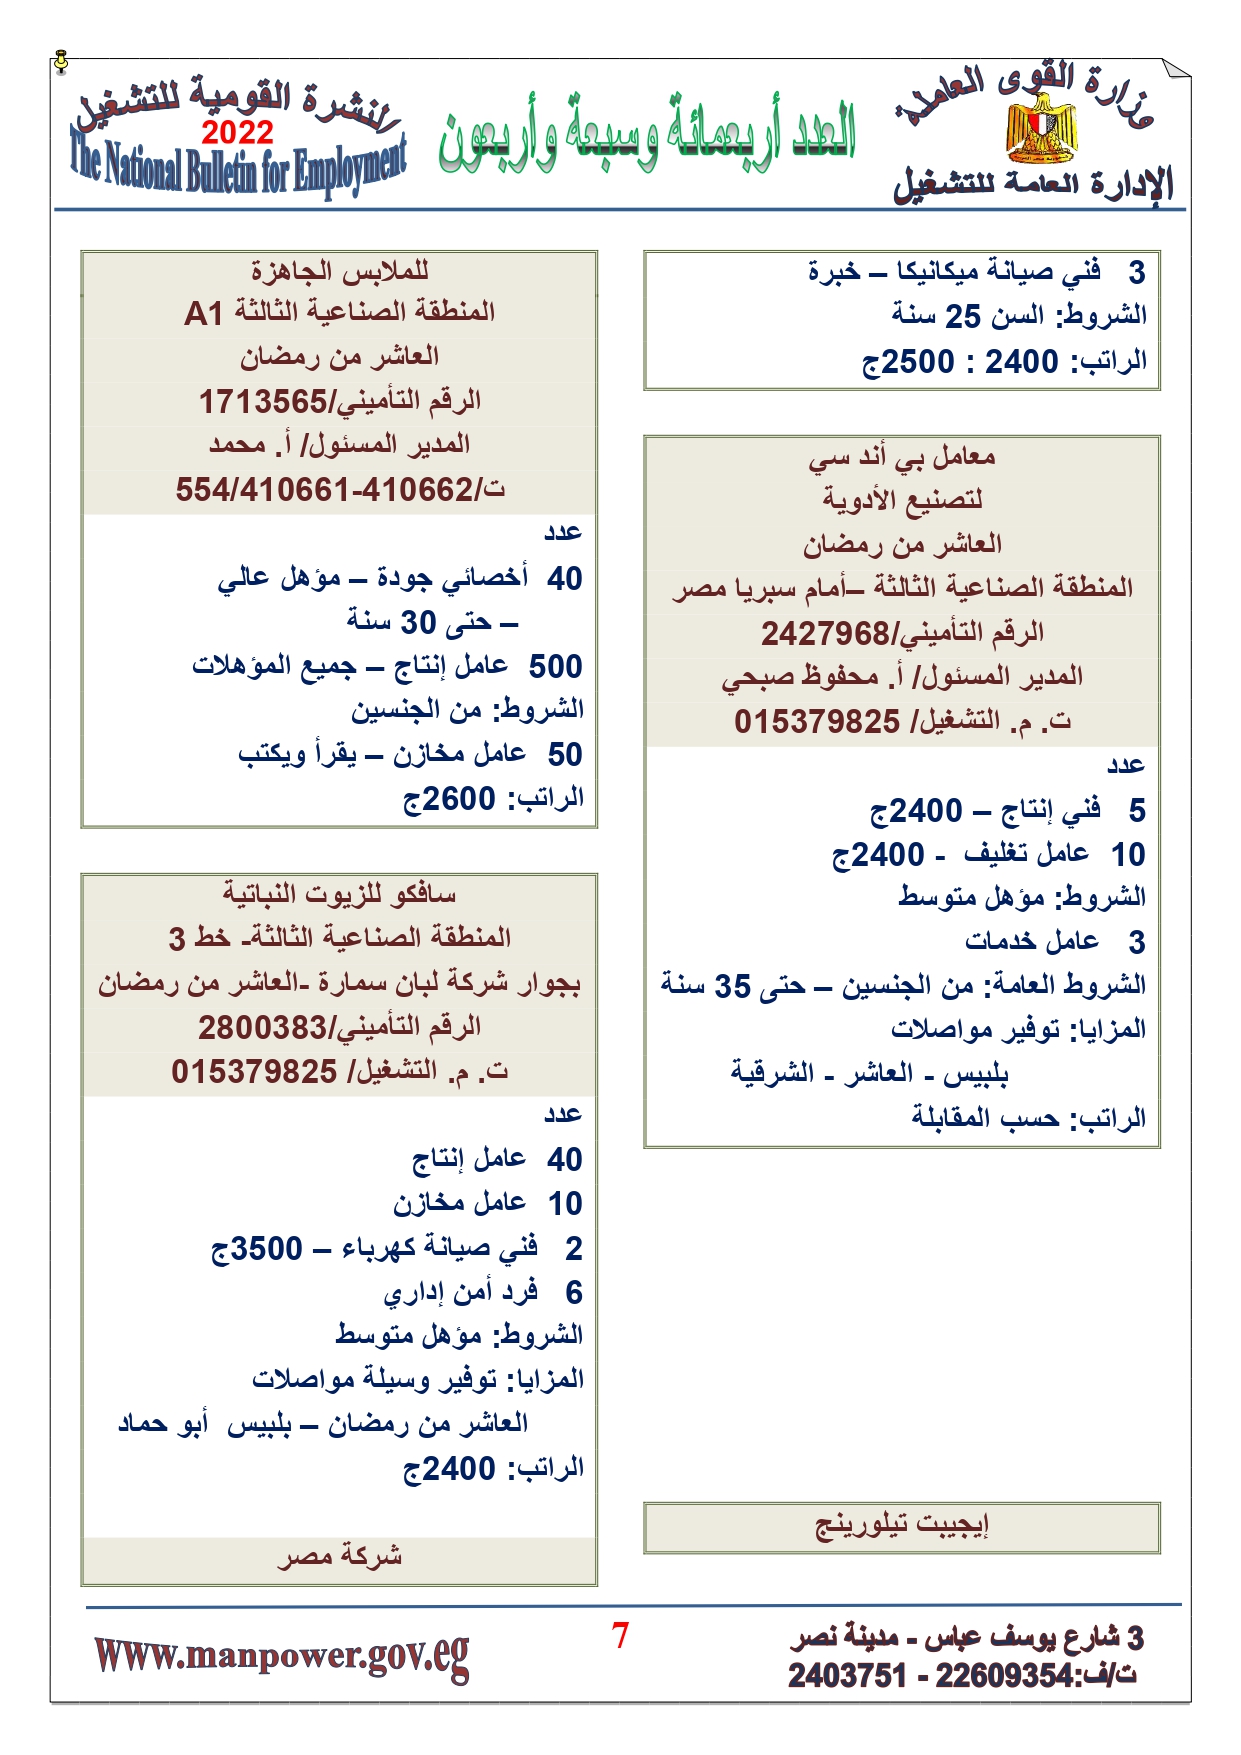 وظائف خالية بمصر وزارة القوي العاملة تعلن عن 2530 وظيفة شاغرة لجميع المؤهلات خلال فبراير ومارس 2022 4